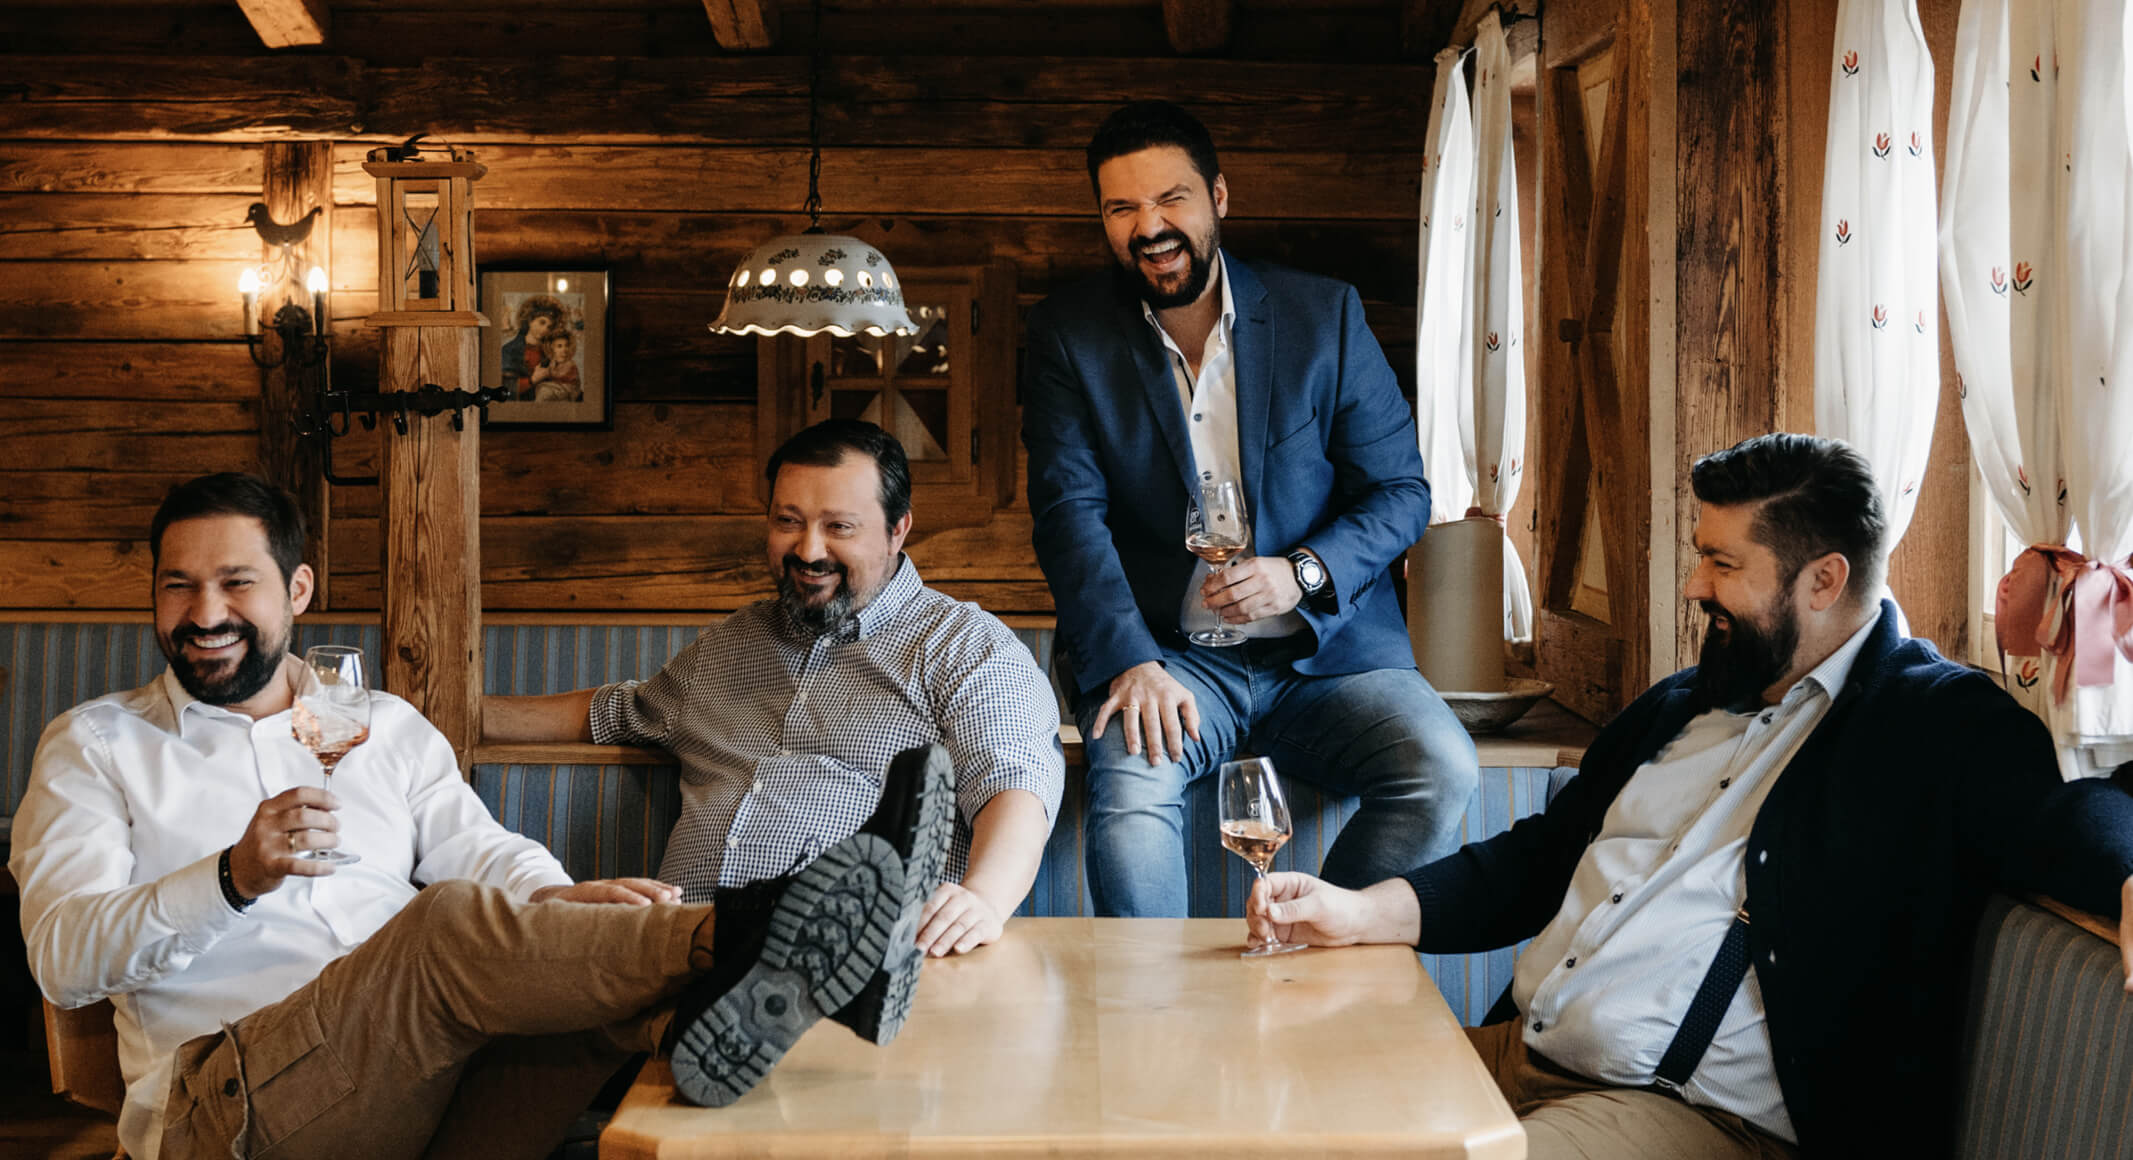 Anton, Michael, Klemens und Lukas sitzen im Heurigen und trinken Wein